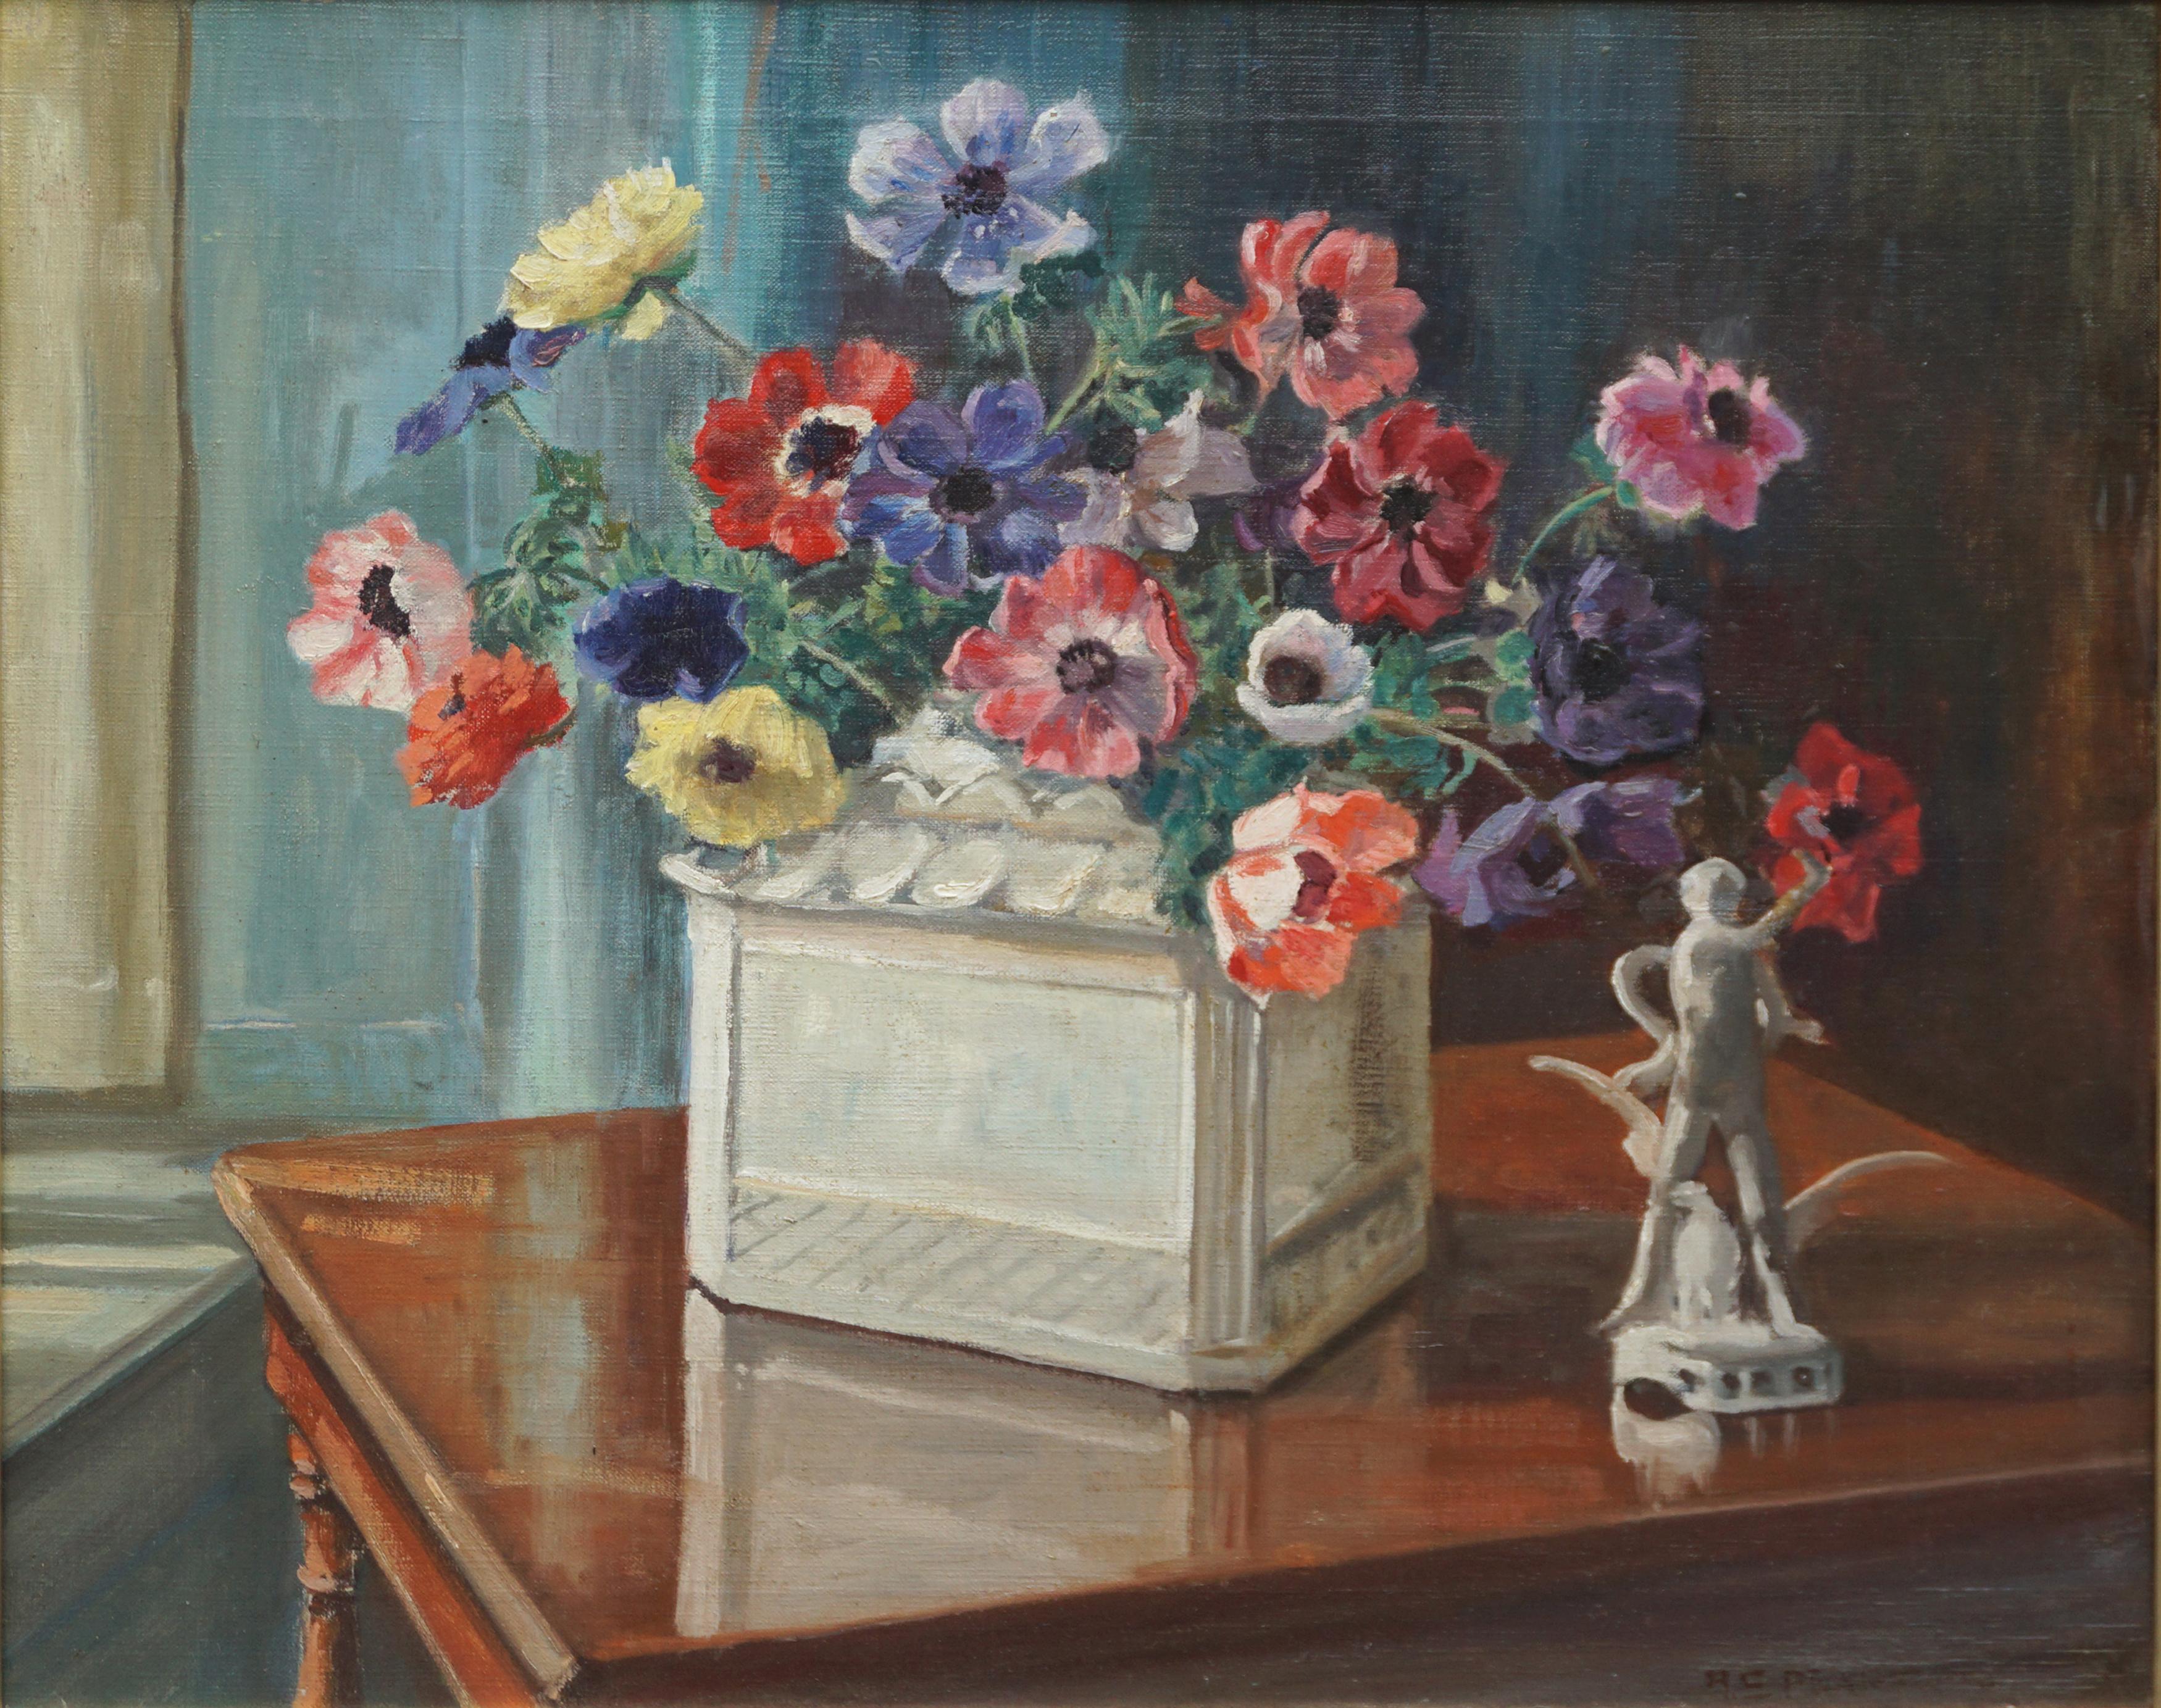 Blumenstillleben aus den 1940er Jahren – Anemones & Porzellanstatue – Painting von Marguerite Stuber Pearson